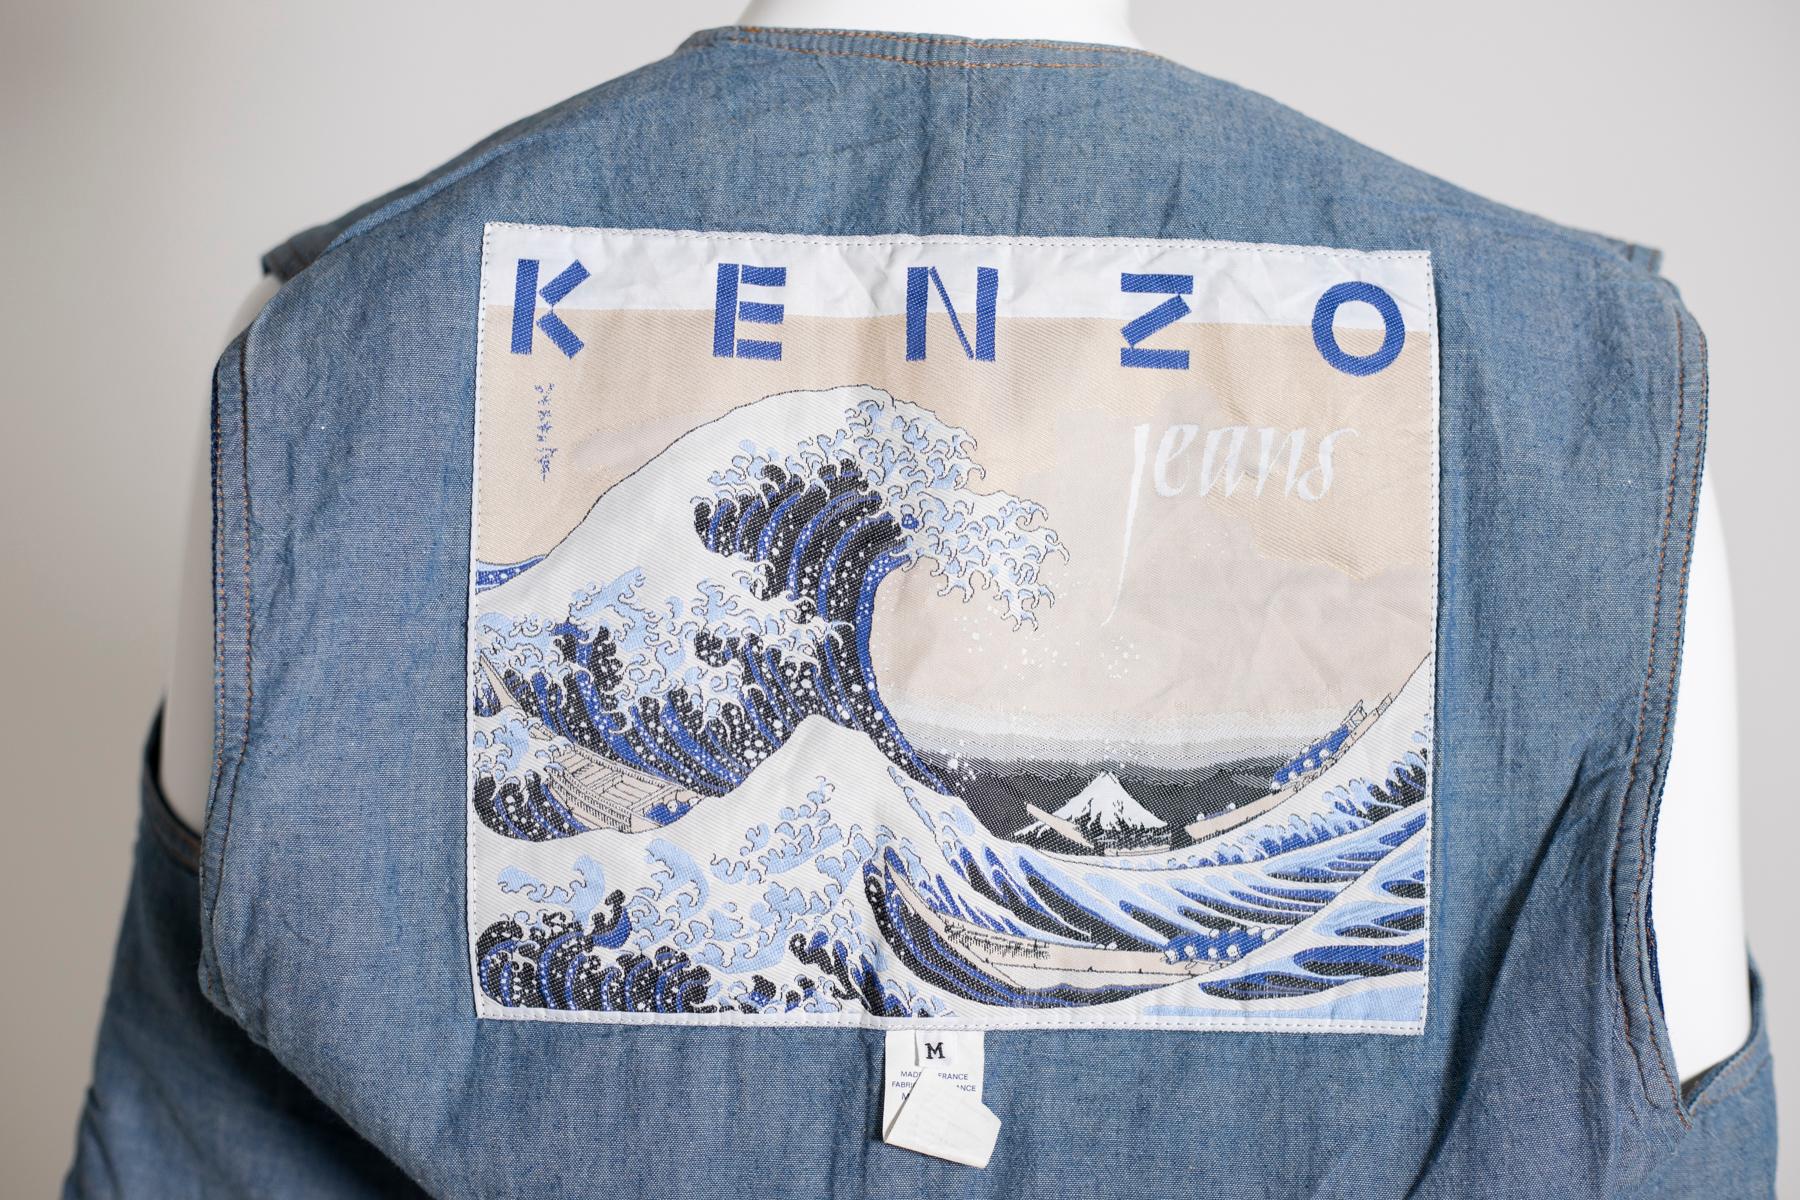 Limitierte Weste von Kenzo aus Jeans mit aufgesticktem Bohème-Muster auf der Vorderseite, aus den 1990er Jahren. Die Weste ist Teil der Kollektion, die dem berühmten japanischen Künstler Hokusai gewidmet ist. Im Inneren der Weste können wir sein